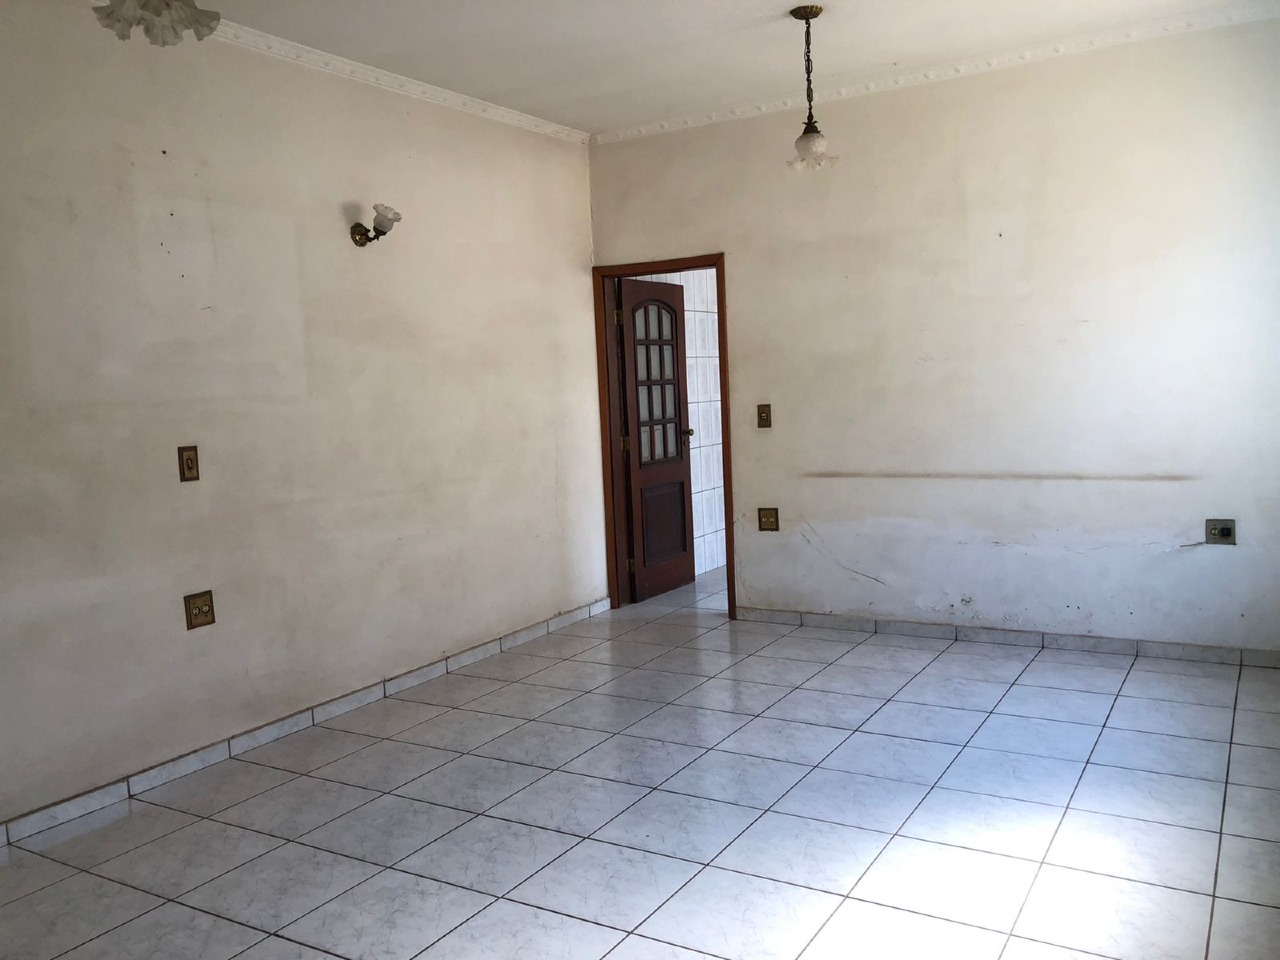 Casa para comprar, 2 quartos, 2 vagas, no bairro Cidade Alta em Piracicaba - SP